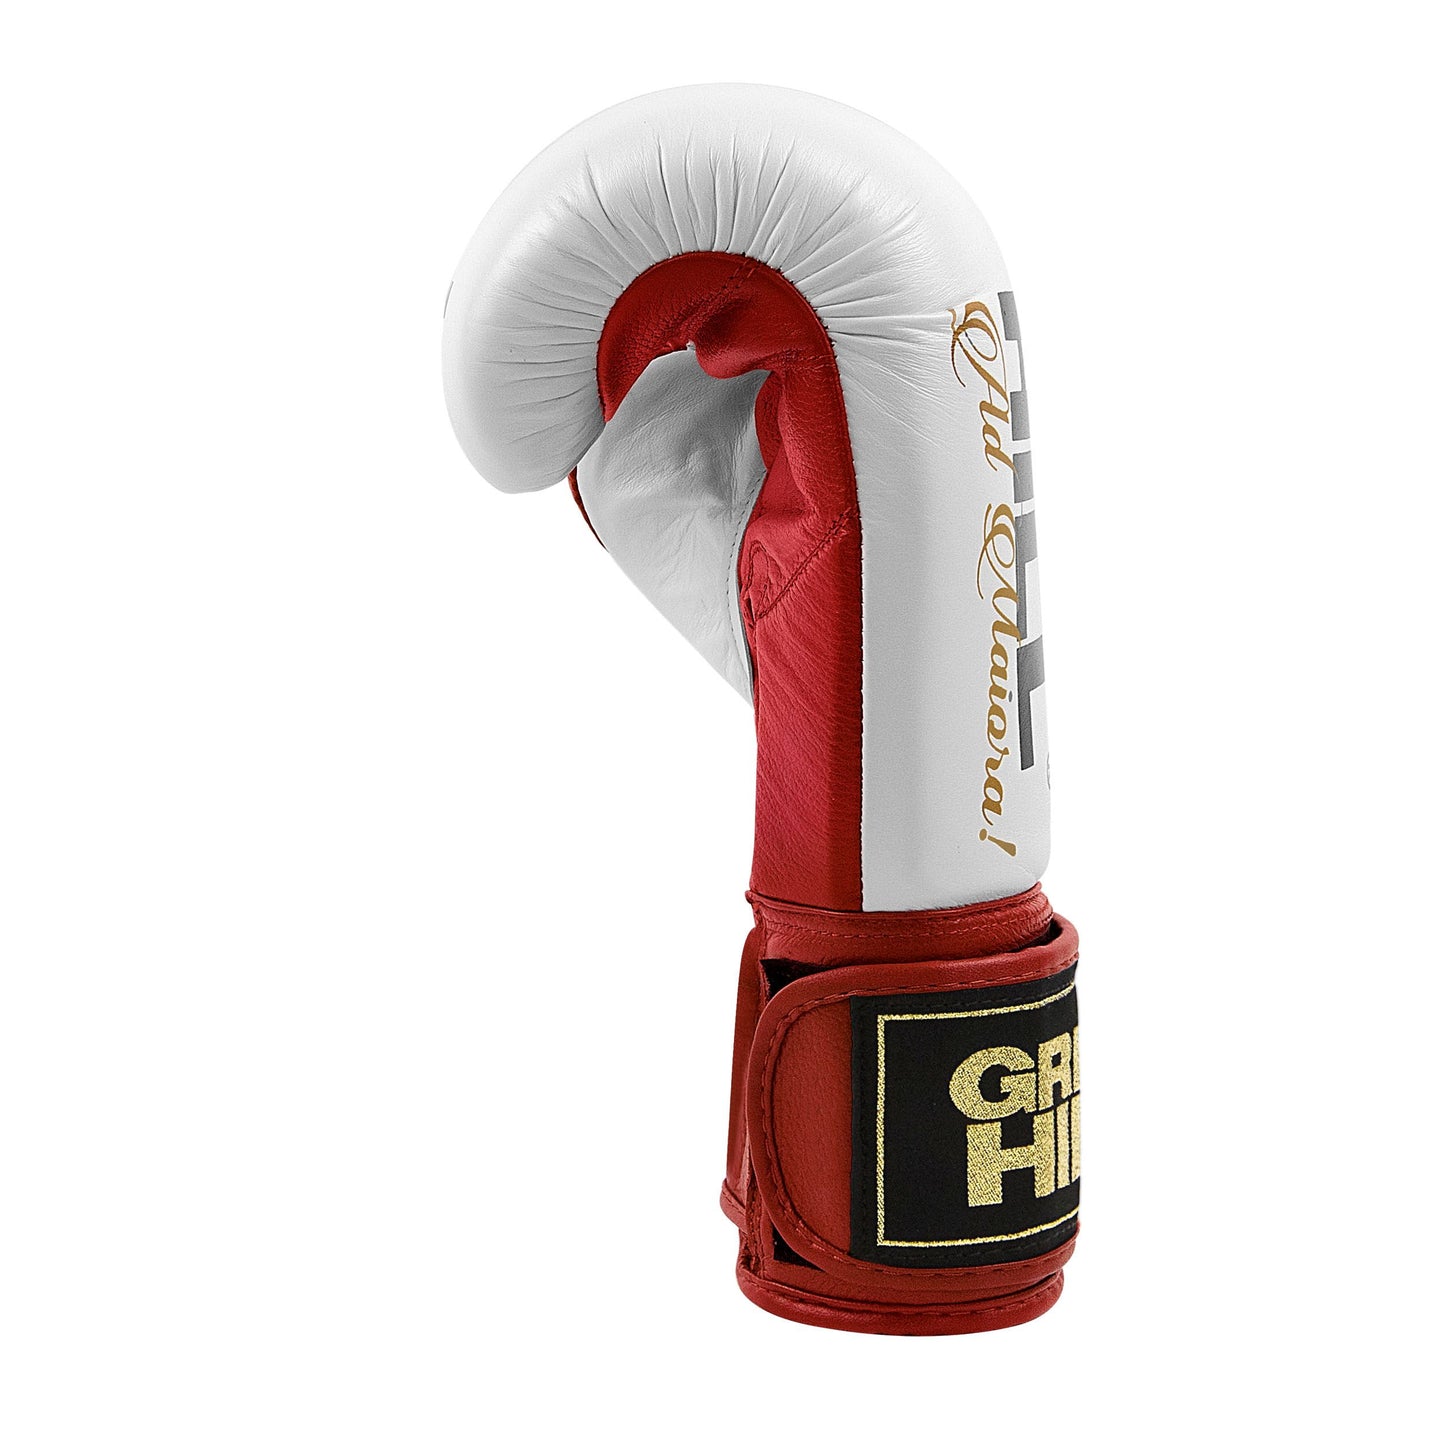 Boxing Gloves “LEGEND”